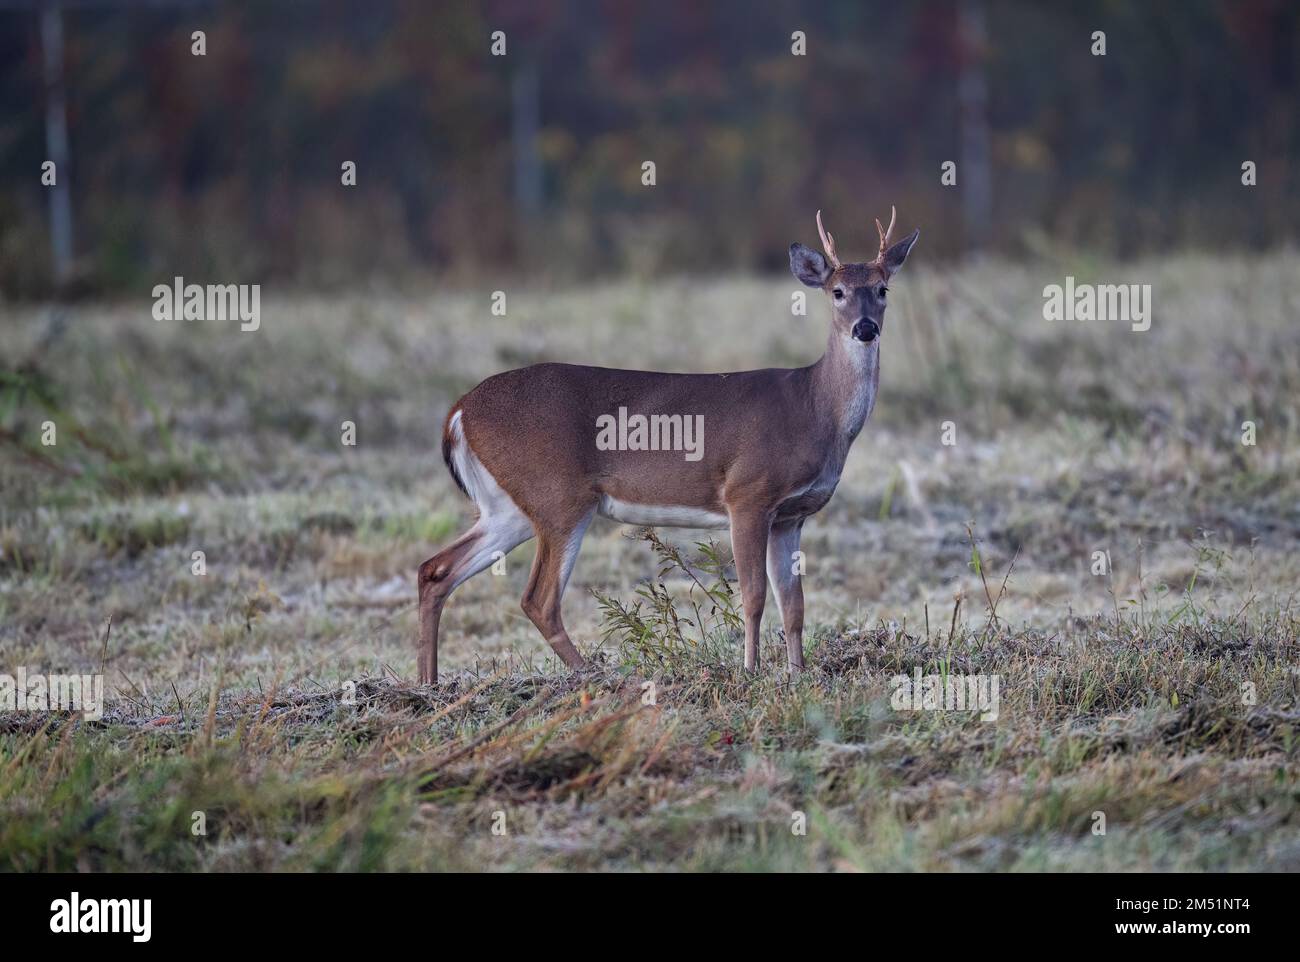 Un beau cerf debout sur le terrain et regardant la caméra Banque D'Images